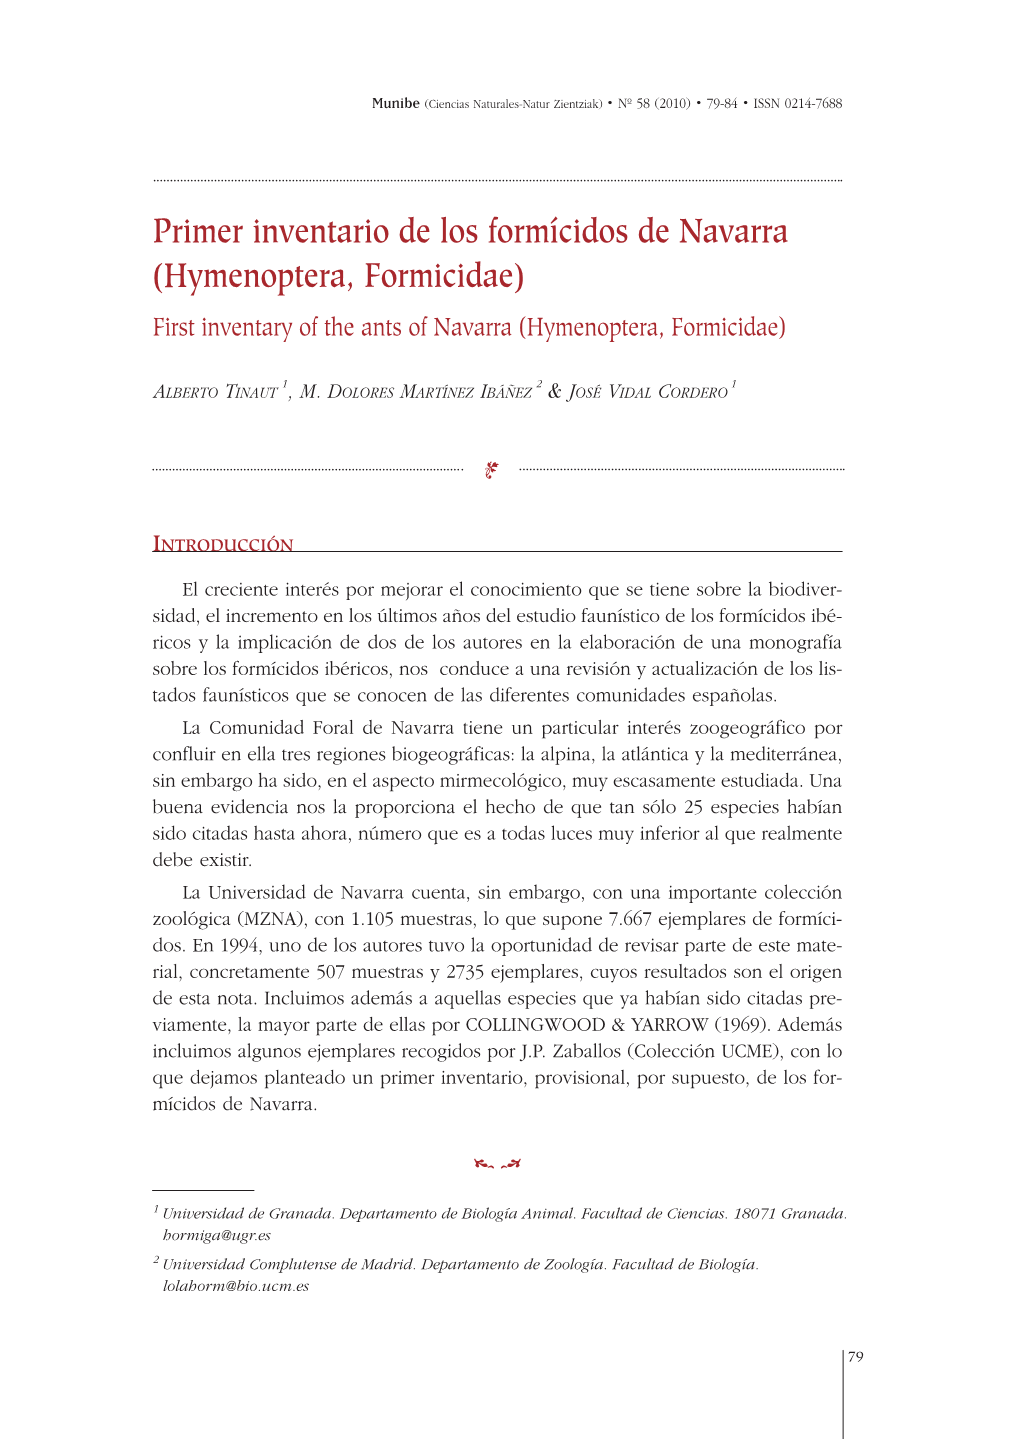 Primer Inventario De Los Formícidos De Navarra (Hymenoptera, Formicidae) First Inventary of the Ants of Navarra (Hymenoptera, Formicidae)